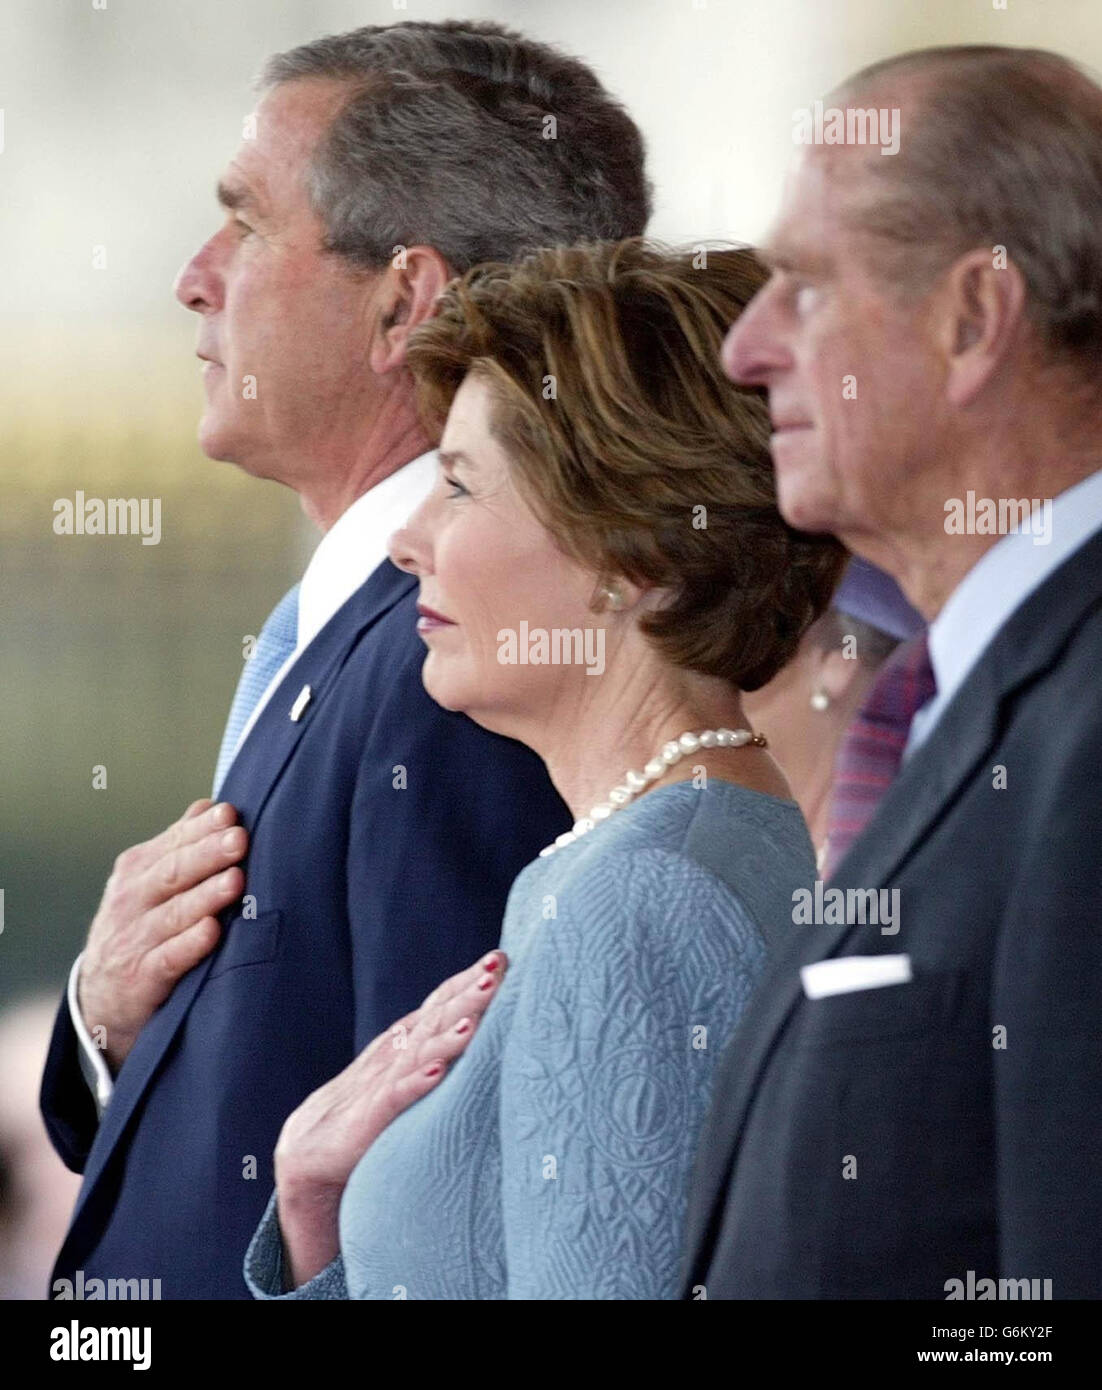 Le président américain George Bush et sa femme Laura, rejoints par le duc d'Édimbourg sur la piste du palais de Buckingham à Londres, en regardant un défilé de membres de la Cavalerie de la maison au début de la visite d'État du président en Grande-Bretagne. Plus tard, M. Bush a prononcé un discours à la salle de banquet de Whitehall et a visité l'ambassade des États-Unis. Banque D'Images